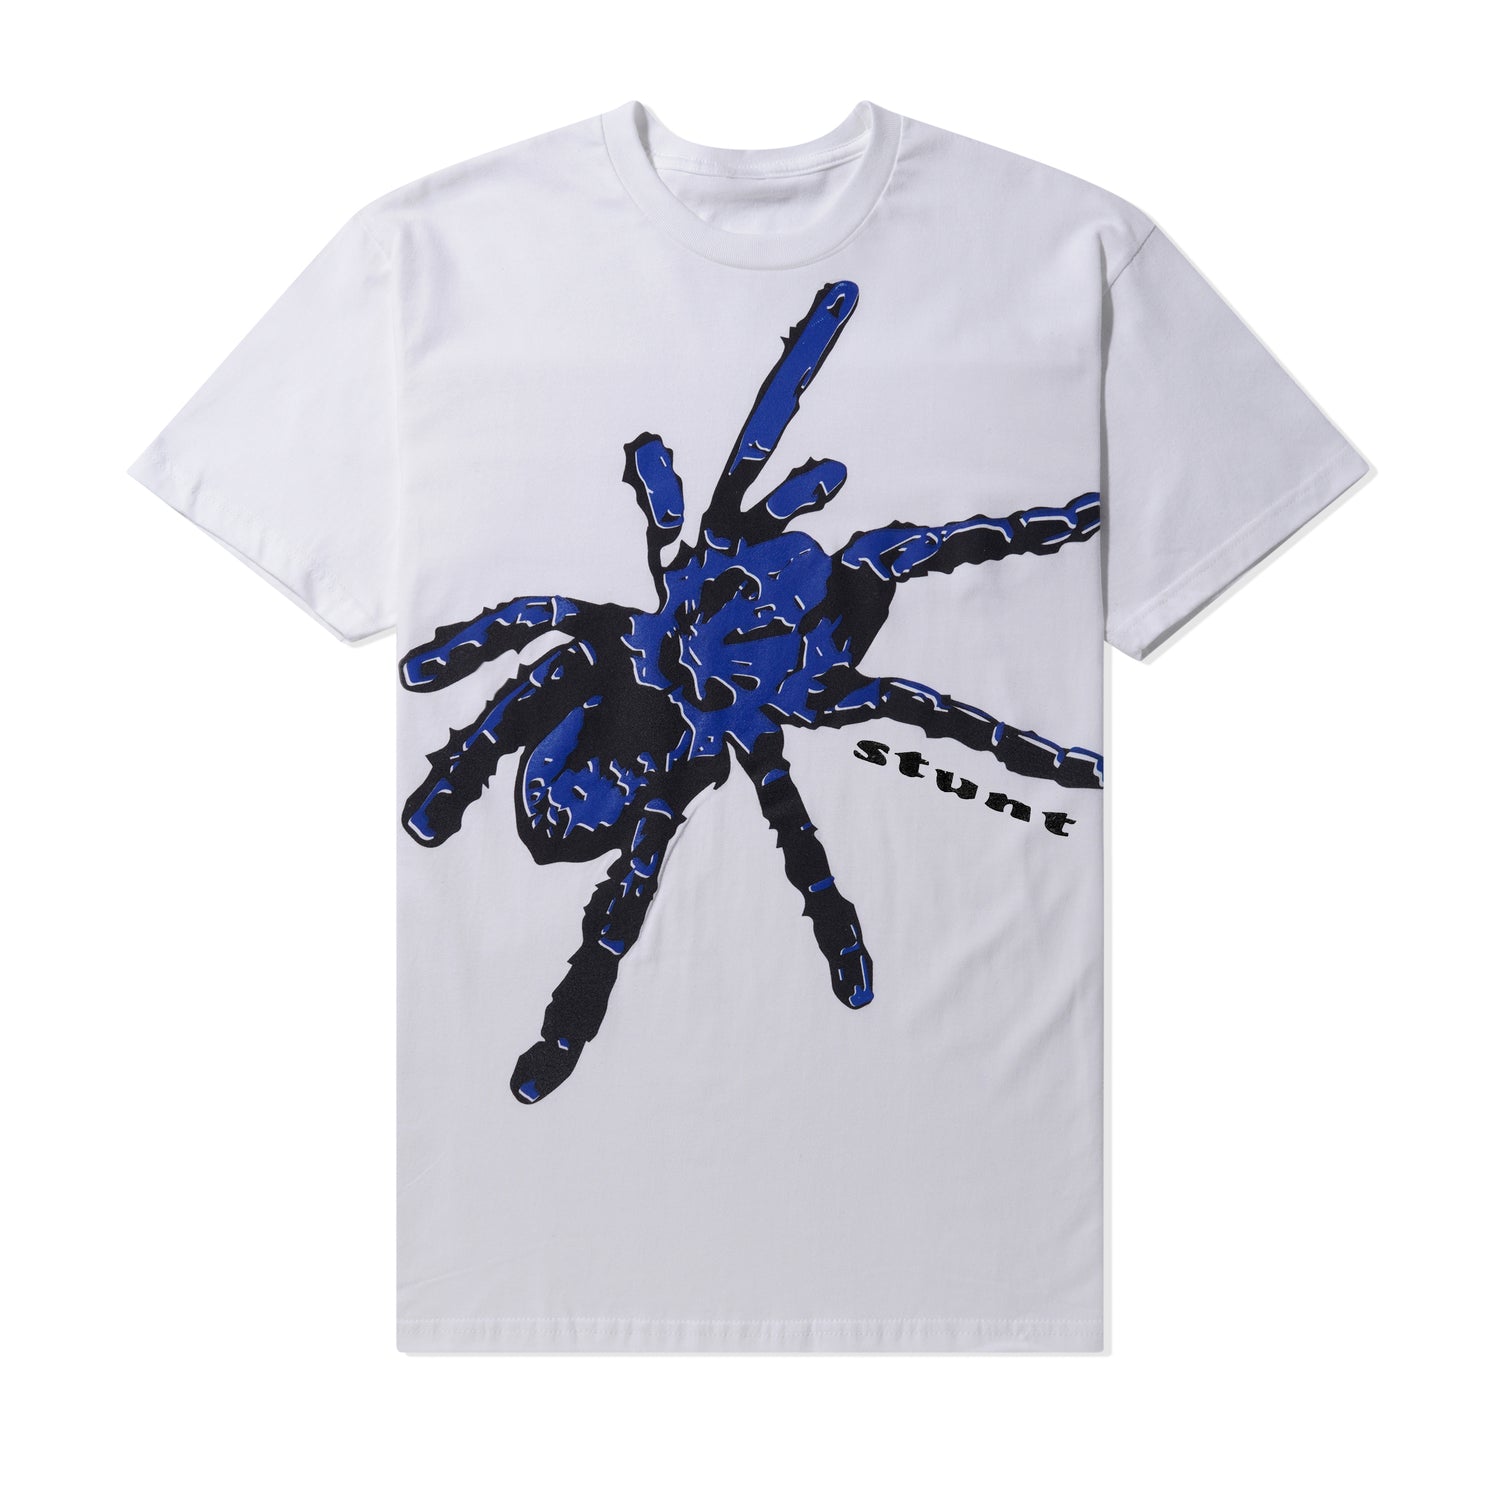 Giant Tarantula Tee, White / Blue